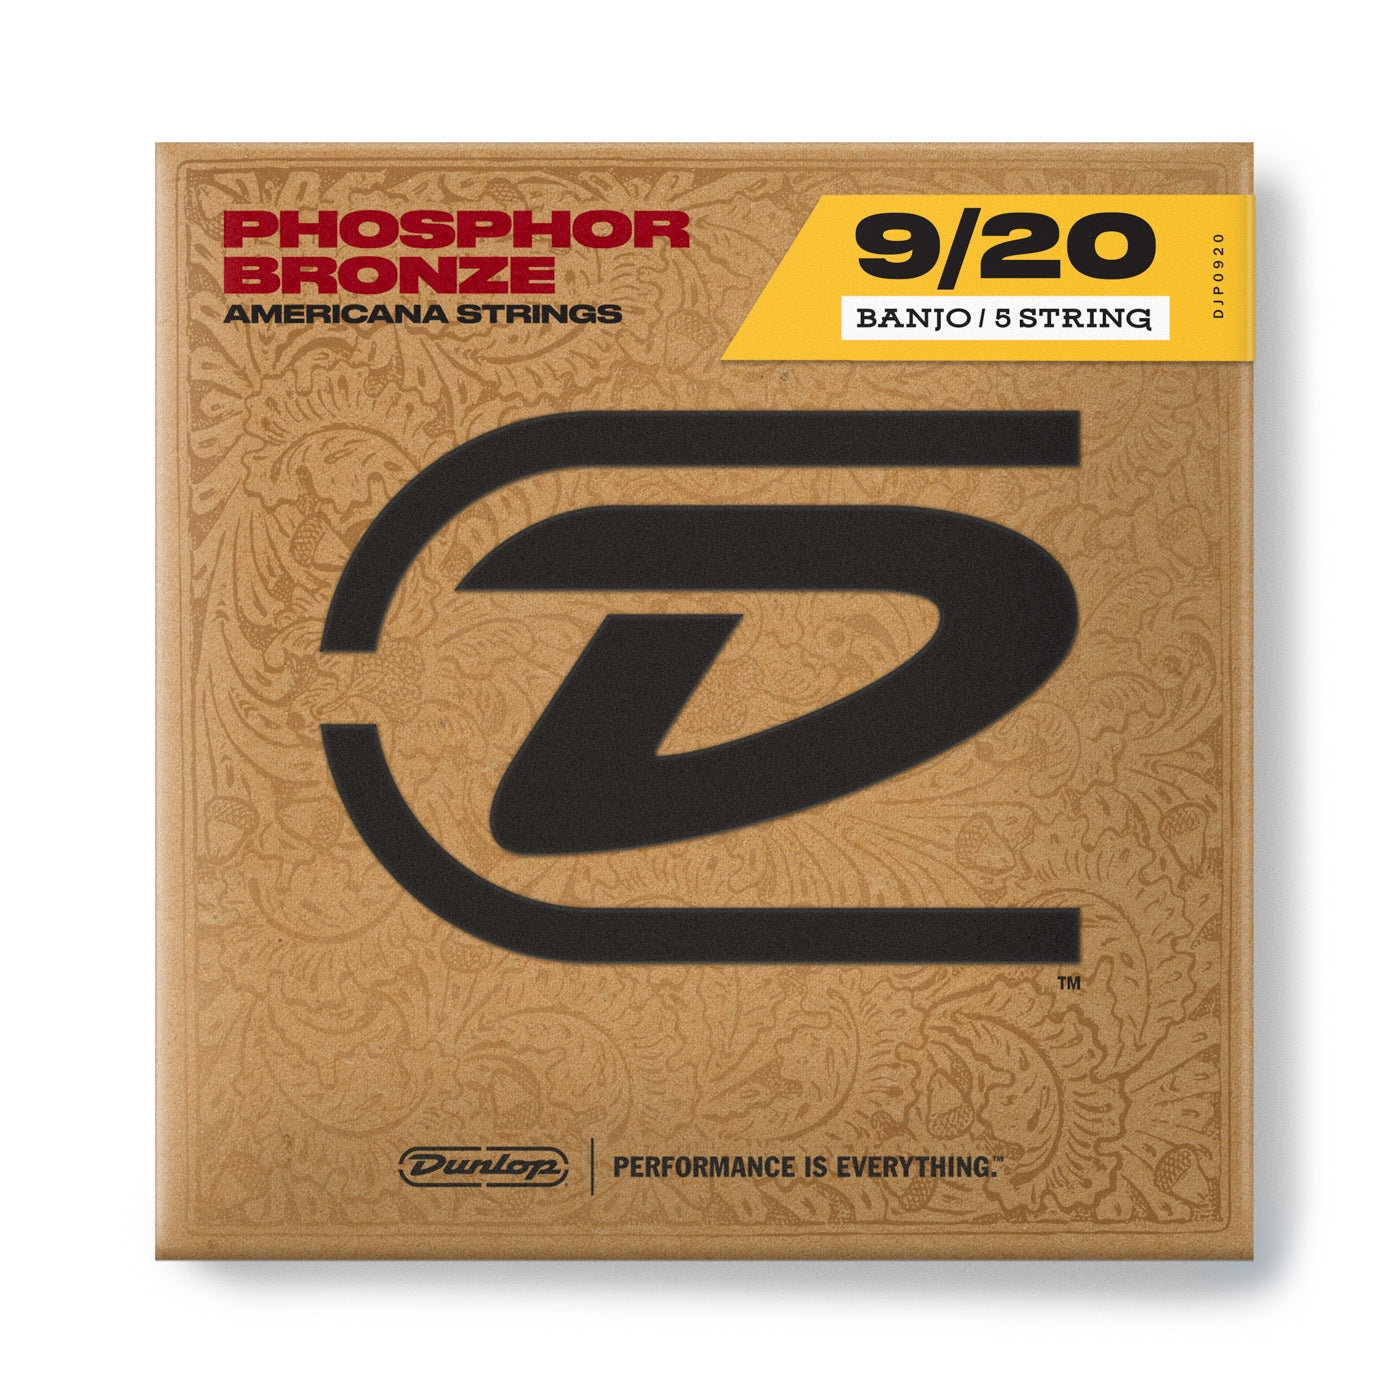 Image 2 of Dunlop DJP0920 Phosphor Bronze Light Gauge Banjo Strings - SKU# DLP1015 : Product Type Strings : Elderly Instruments